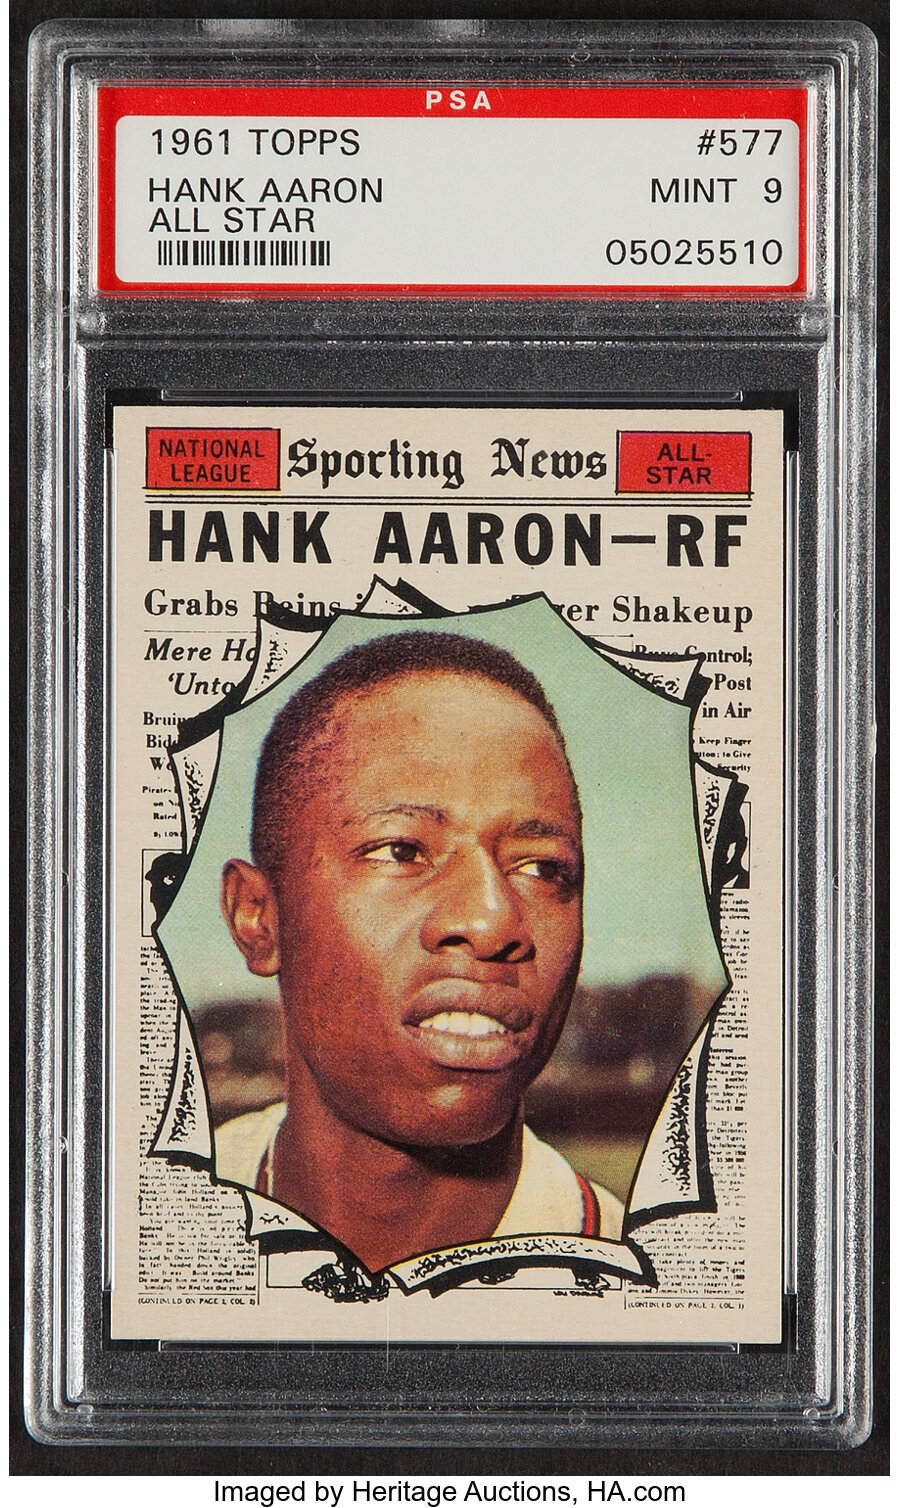 1961 Topps Hank Aaron (All Star) #577 PSA Mint 9